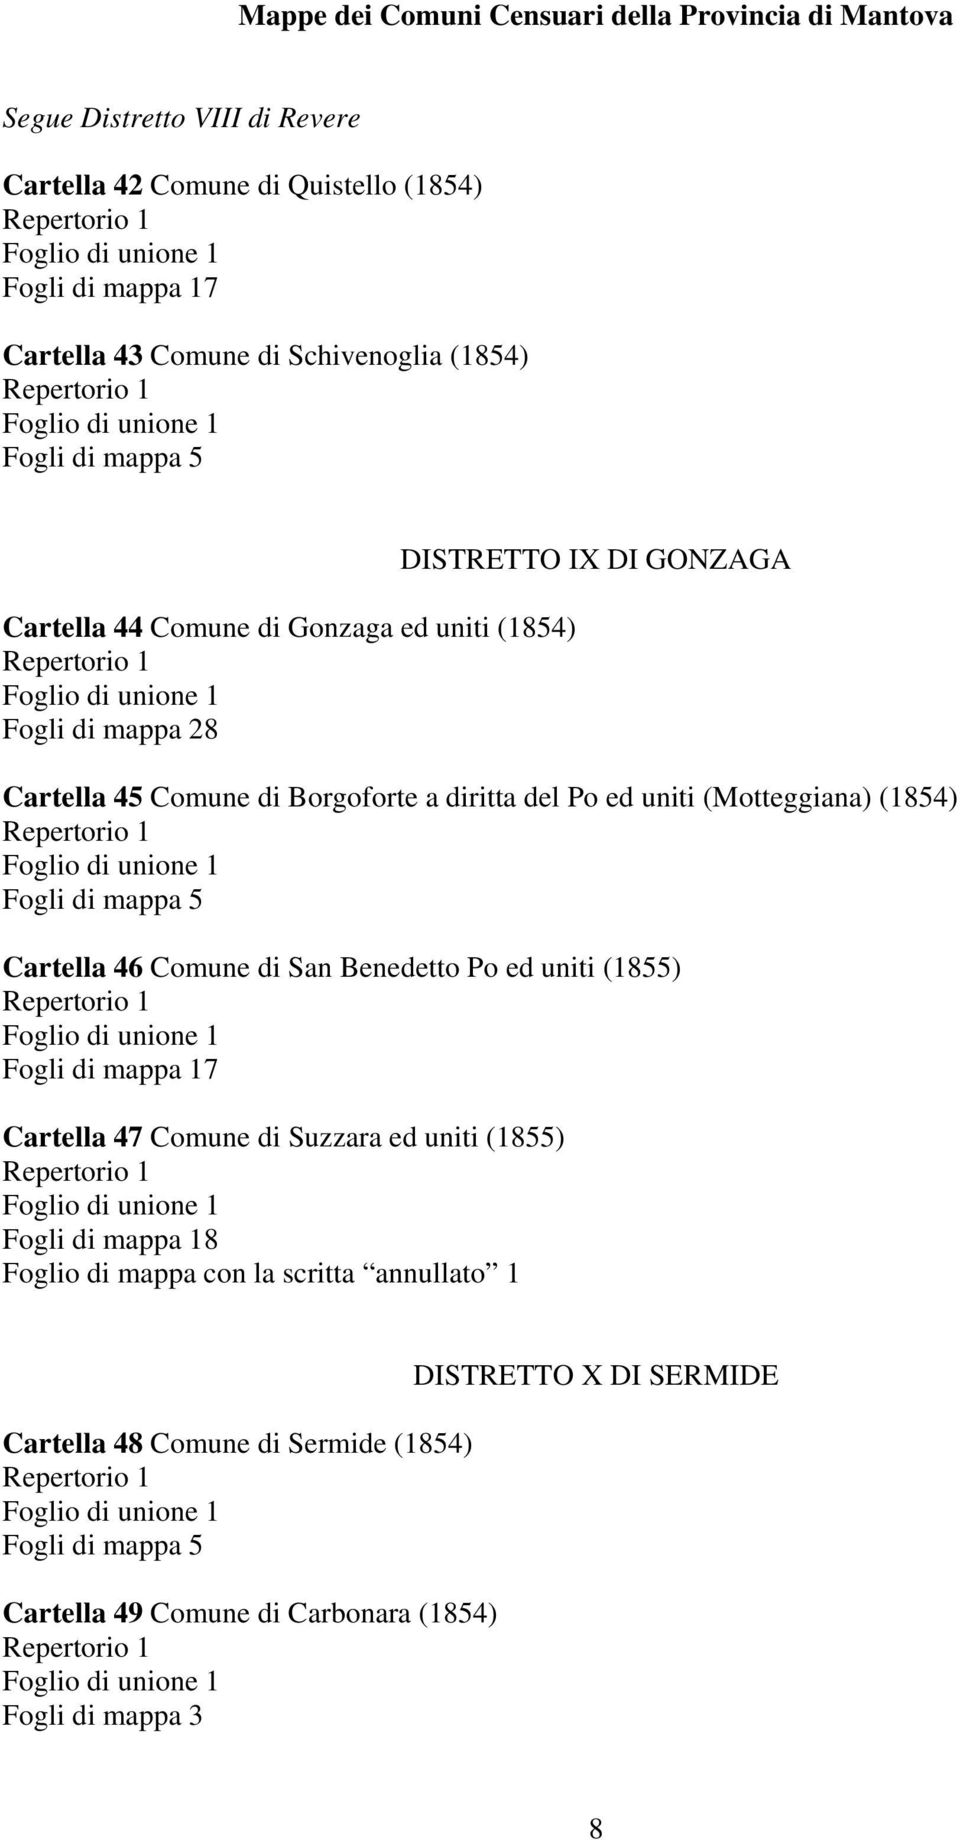 (Motteggiana) (1854) Cartella 46 Comune di San Benedetto Po ed uniti (1855) Fogli di mappa 17 Cartella 47 Comune di Suzzara ed uniti (1855)